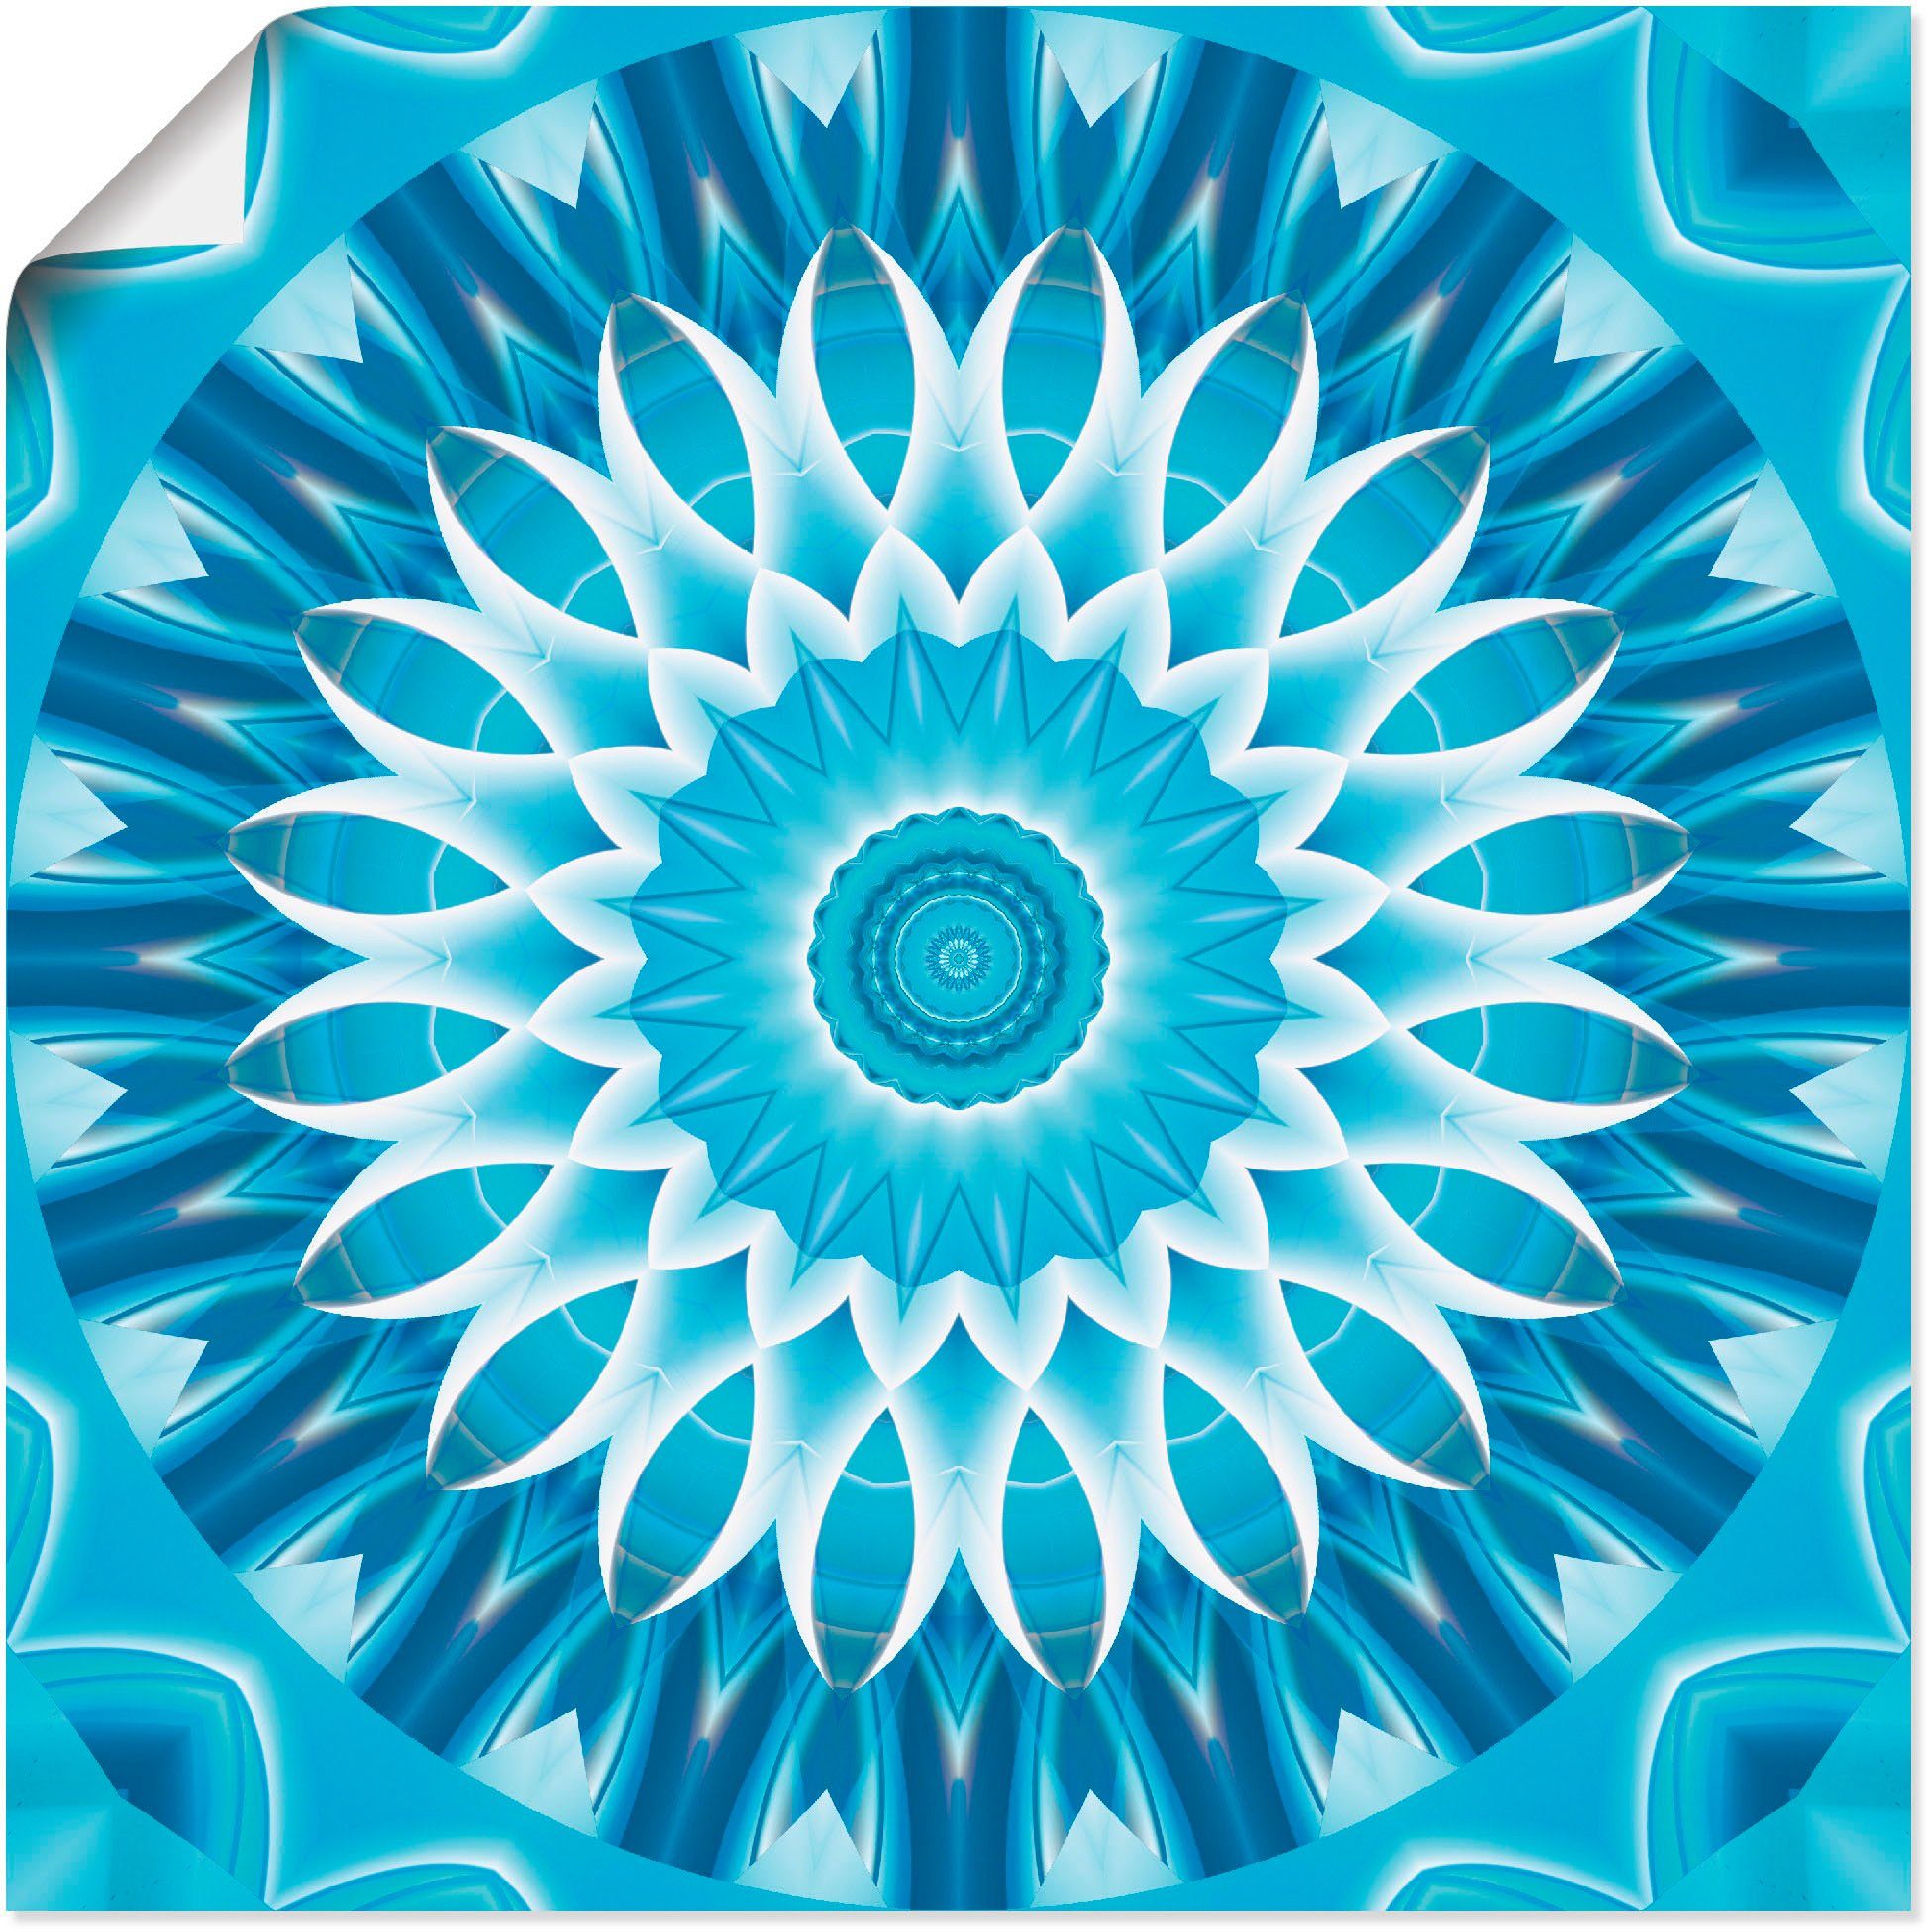 Artland Artprint Mandala blauw bloem in vele afmetingen & productsoorten - artprint van aluminium / artprint voor buiten, artprint op linnen, poster, muursticker / wandfolie ook ge